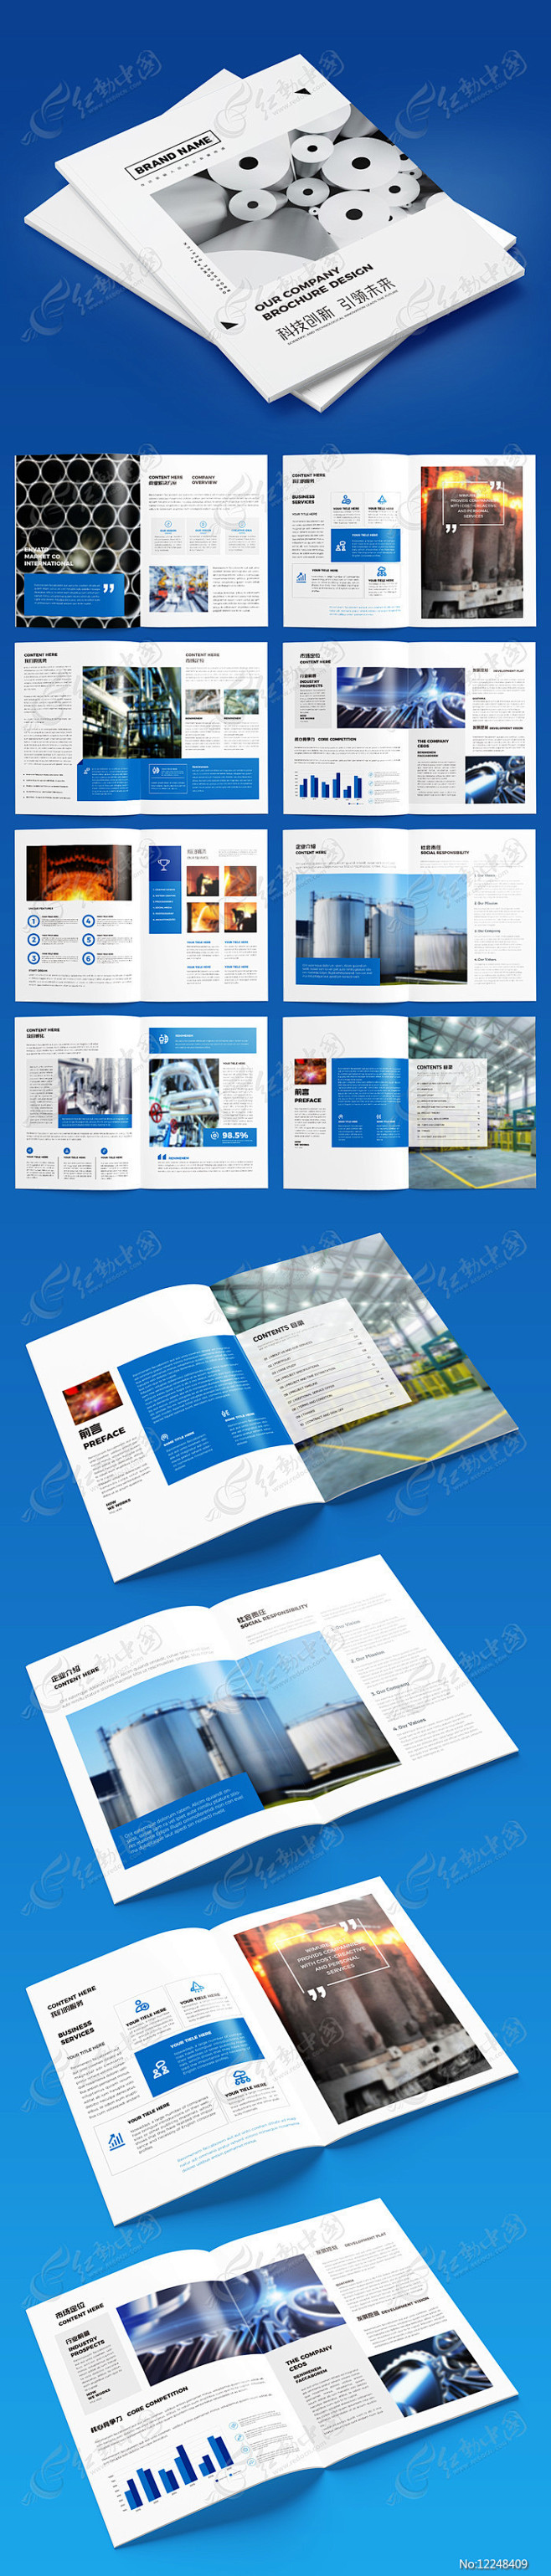 机械制造工厂画册设计模板图片